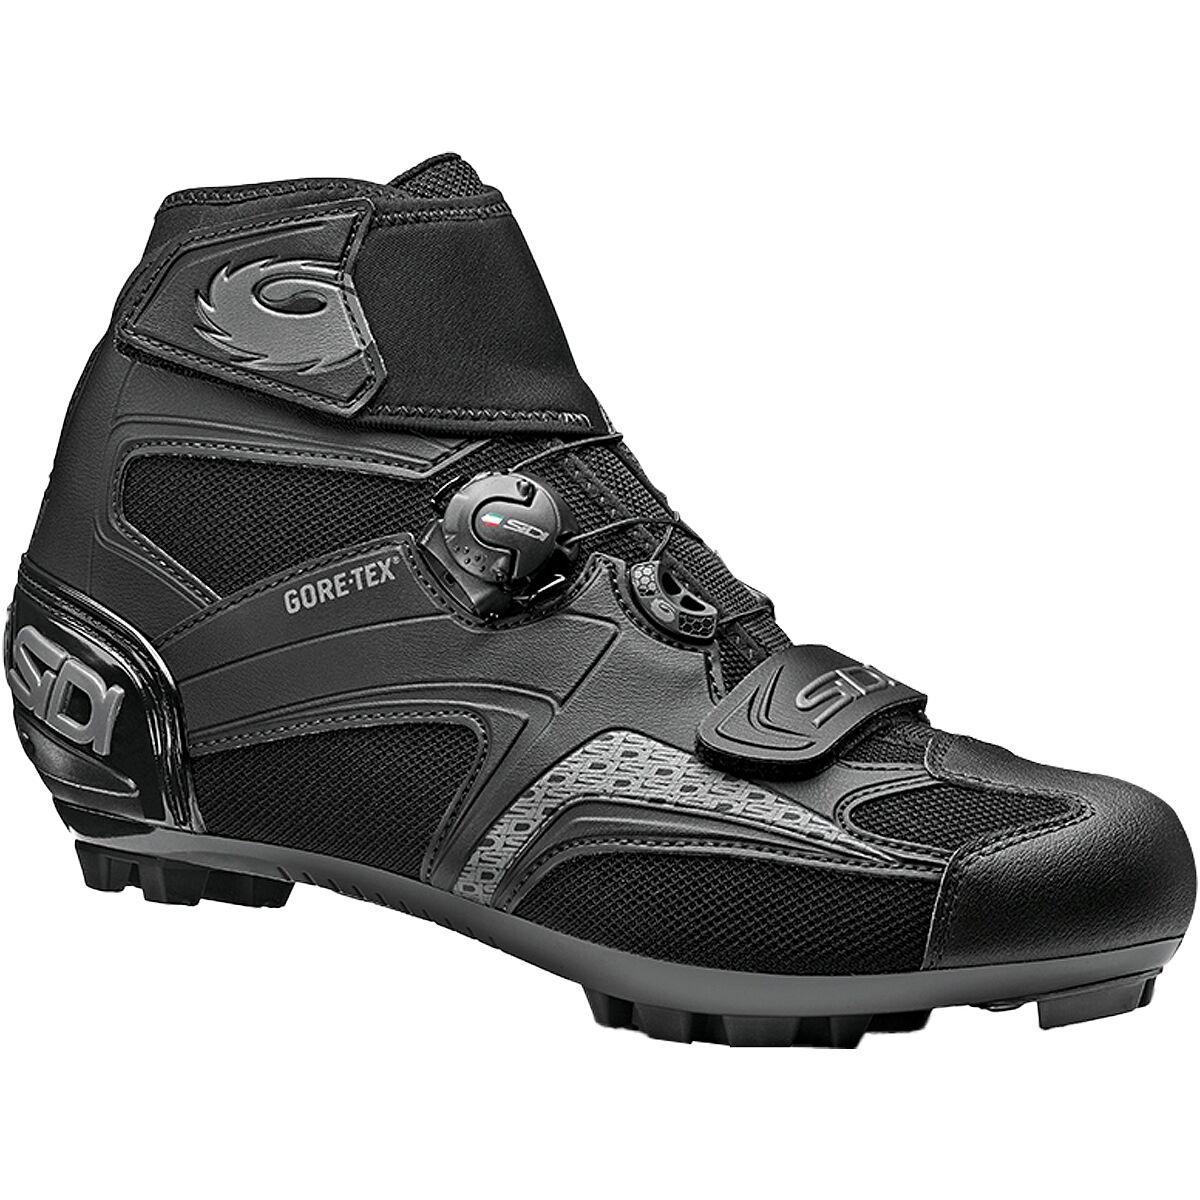 Sidi Frost GORE-TEX 2 Cycling Shoe - Men's Black/Black, 48.0